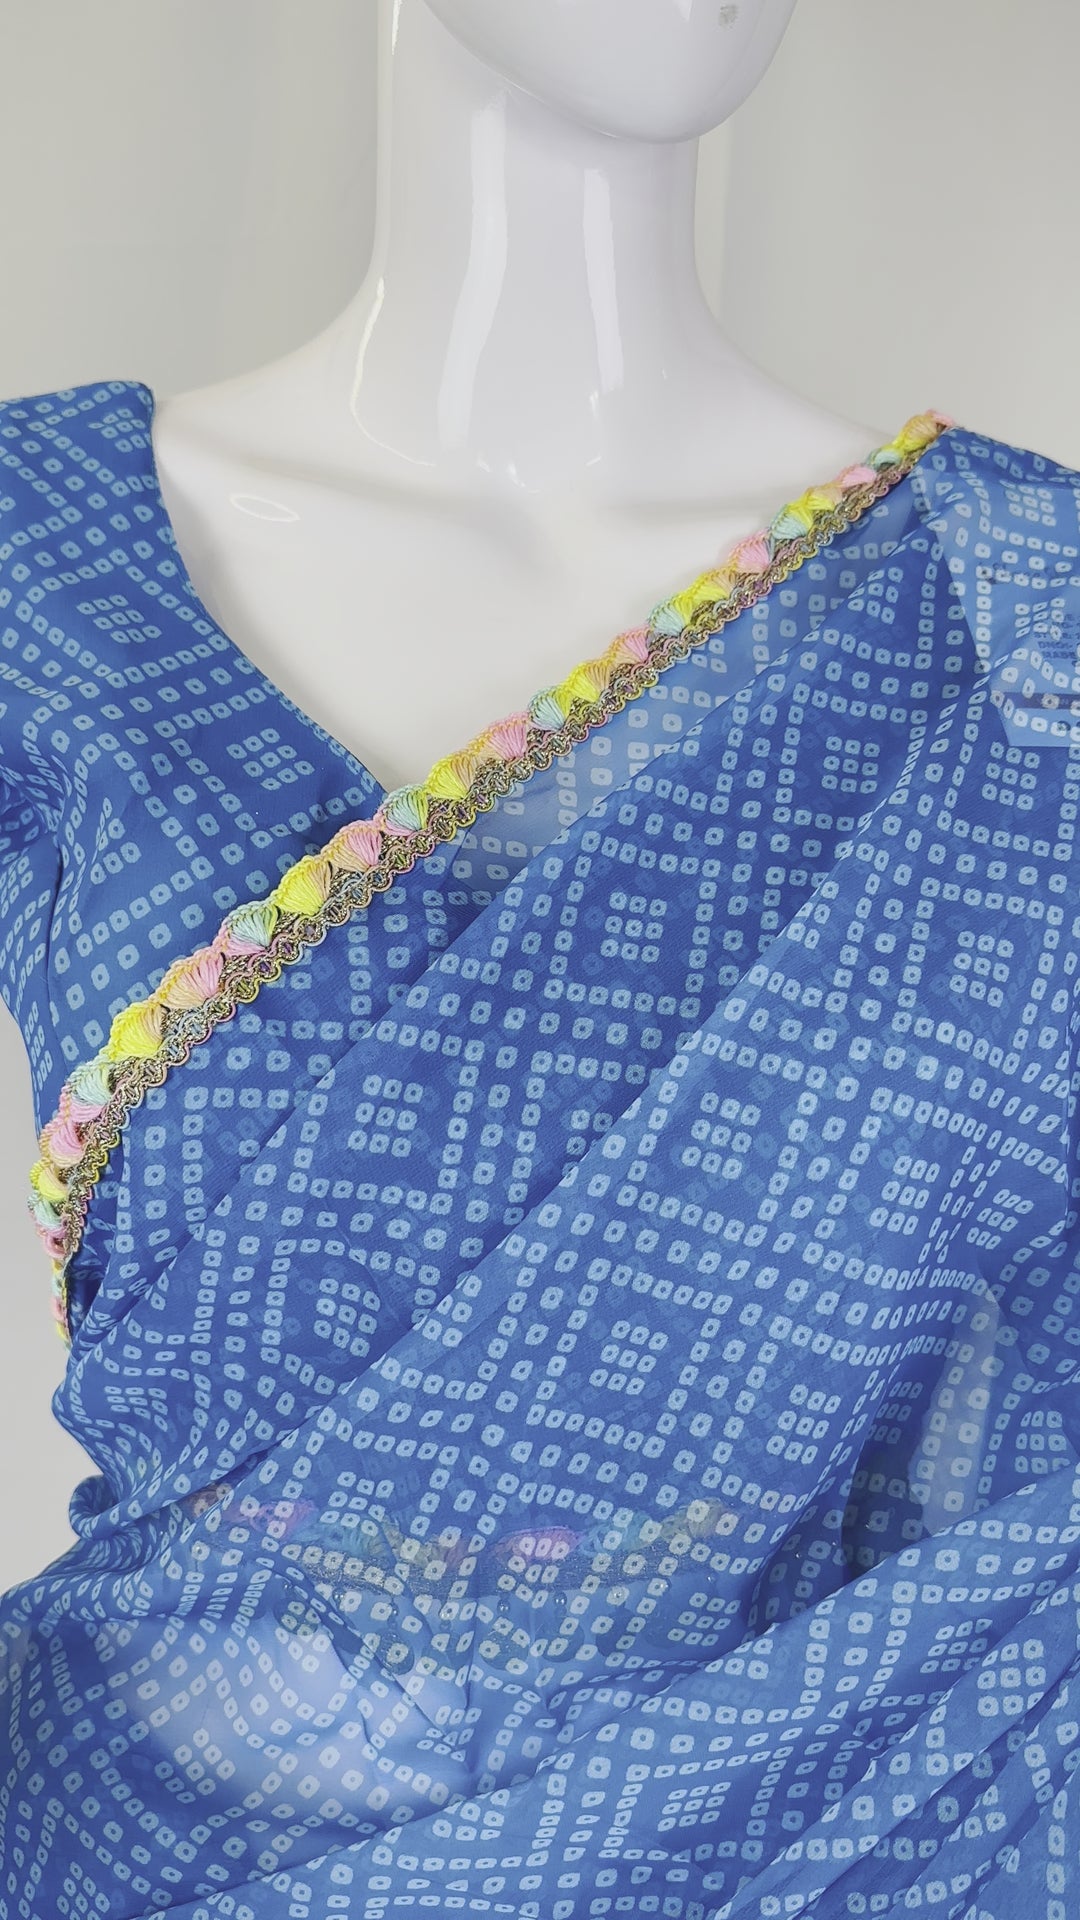 Vibrant Blue Chiffon Bandhani Print Saree with Lace Patti Border & Stitched Blouse